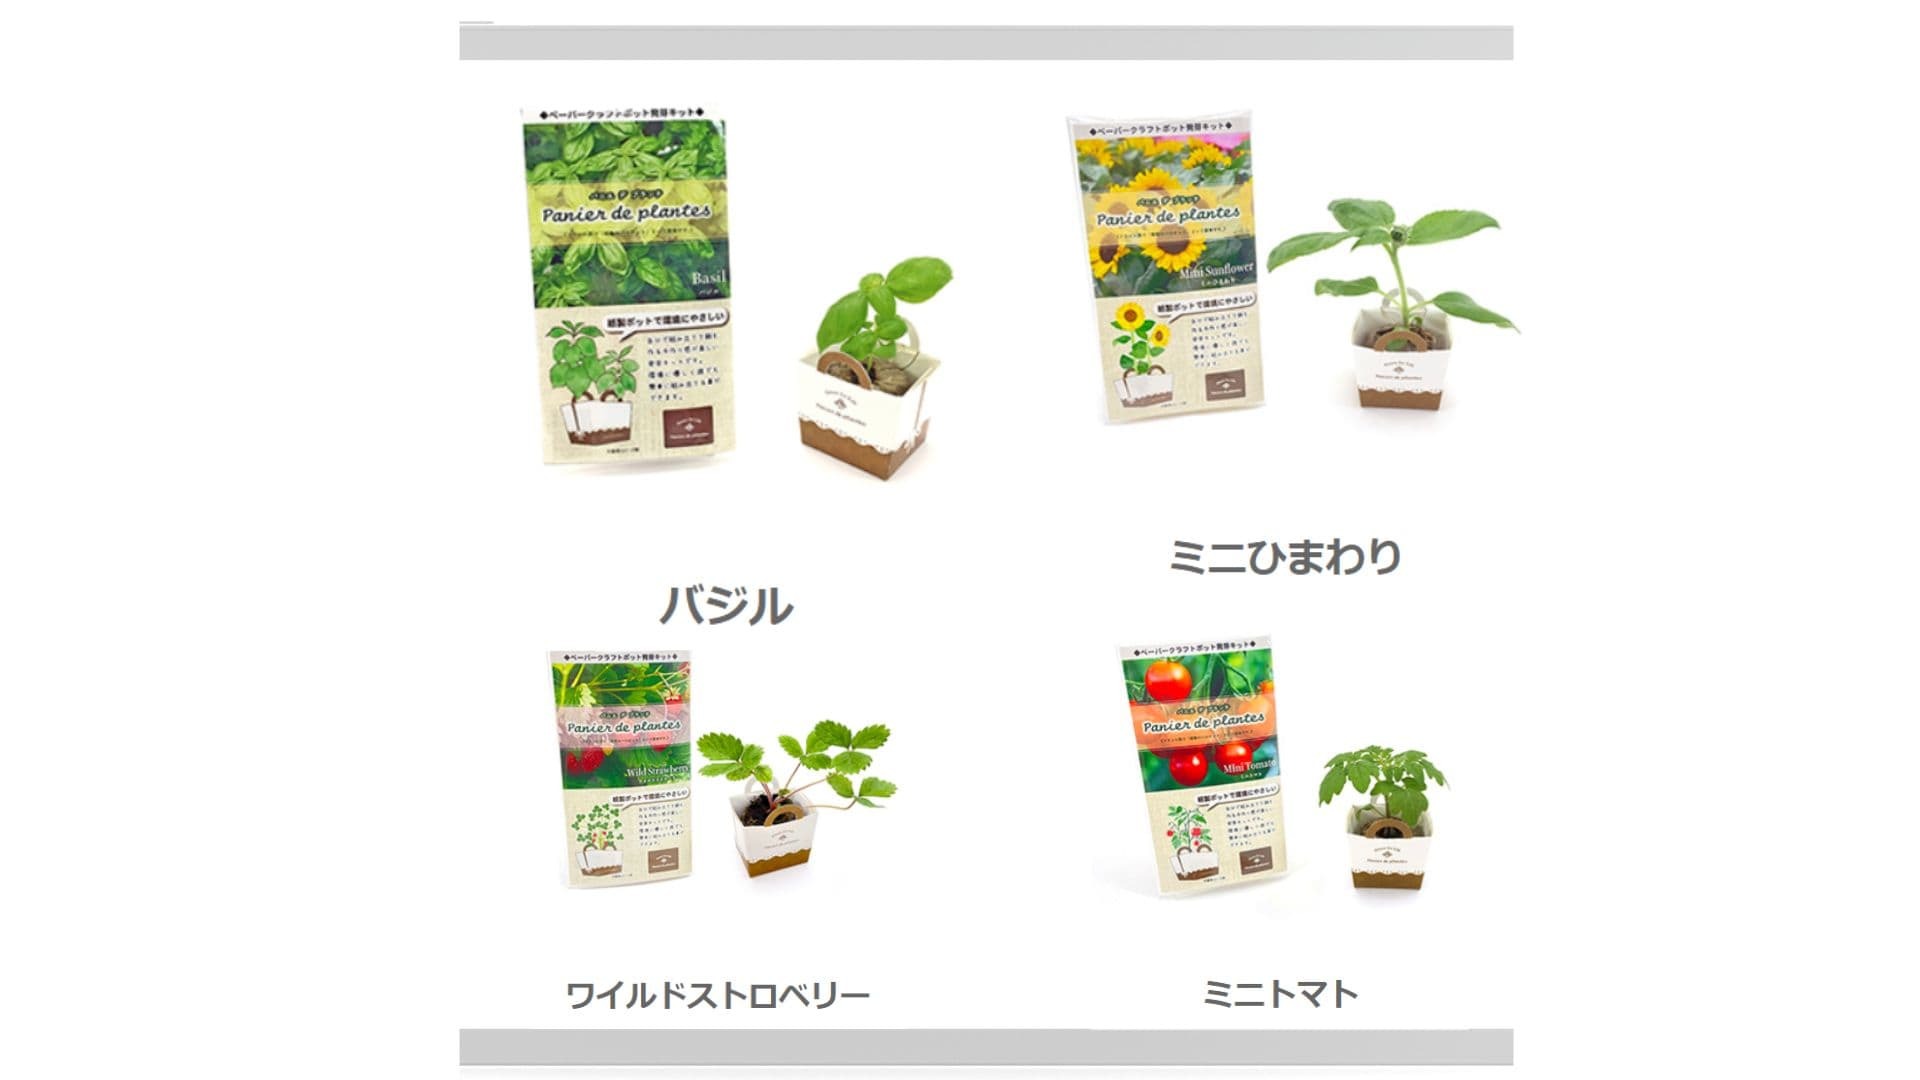 日本製紙盒盆栽種子套裝包含羅勒種子套裝，迷你向日葵種子套裝，野生草莓種子套裝，迷你番茄種子套裝